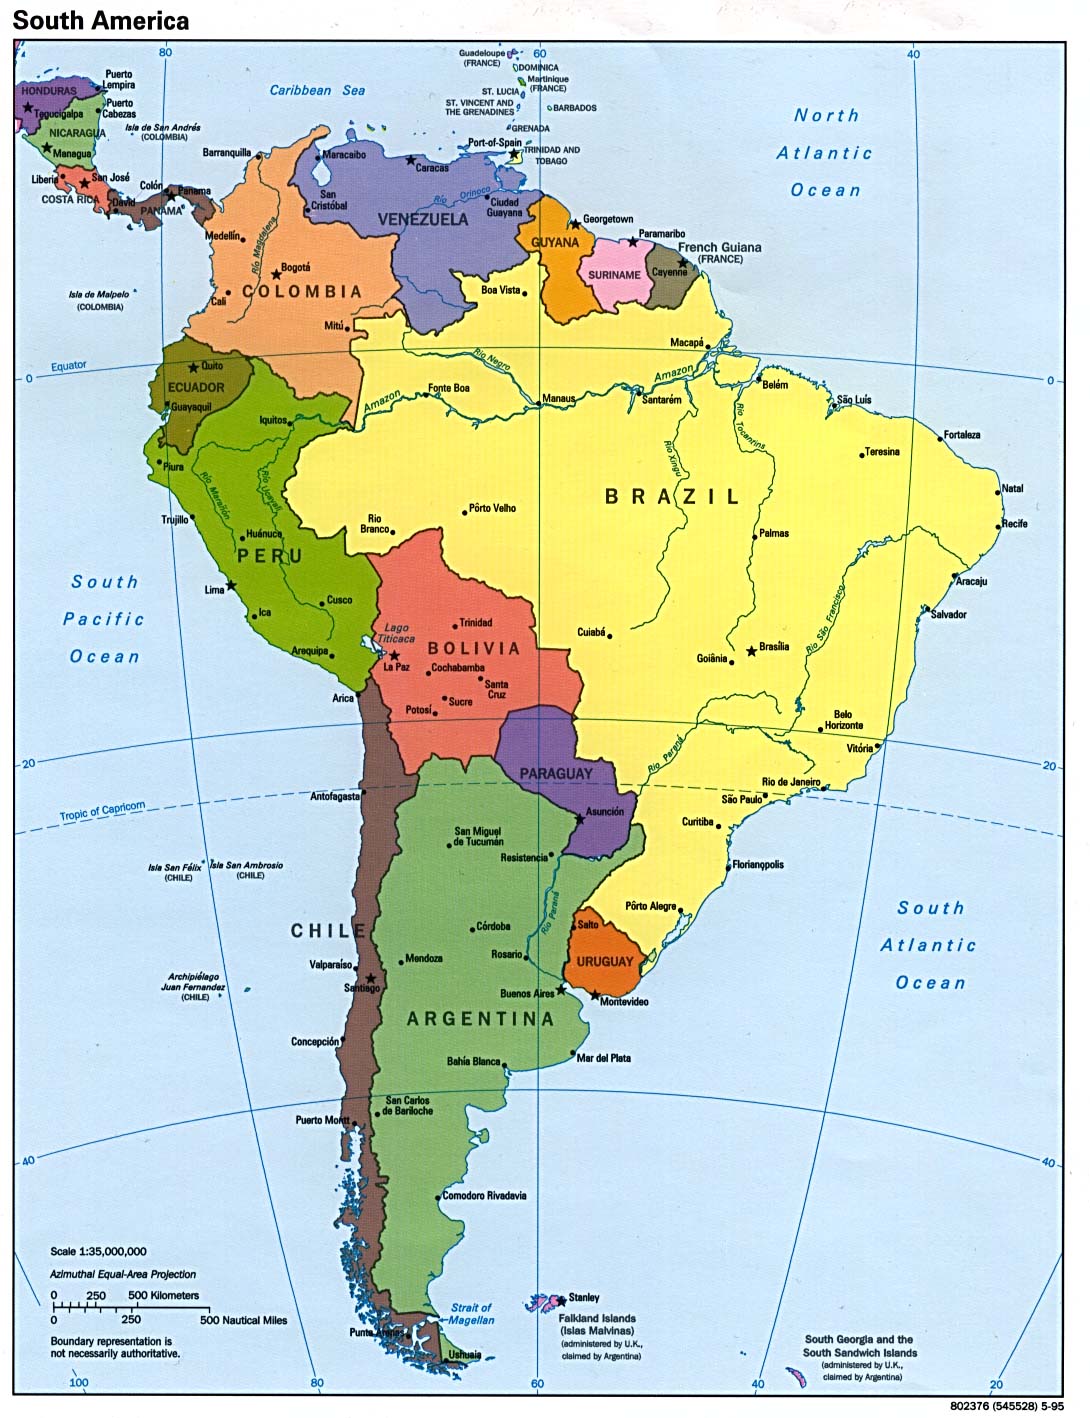 Mapa Político de América del Sur 1995